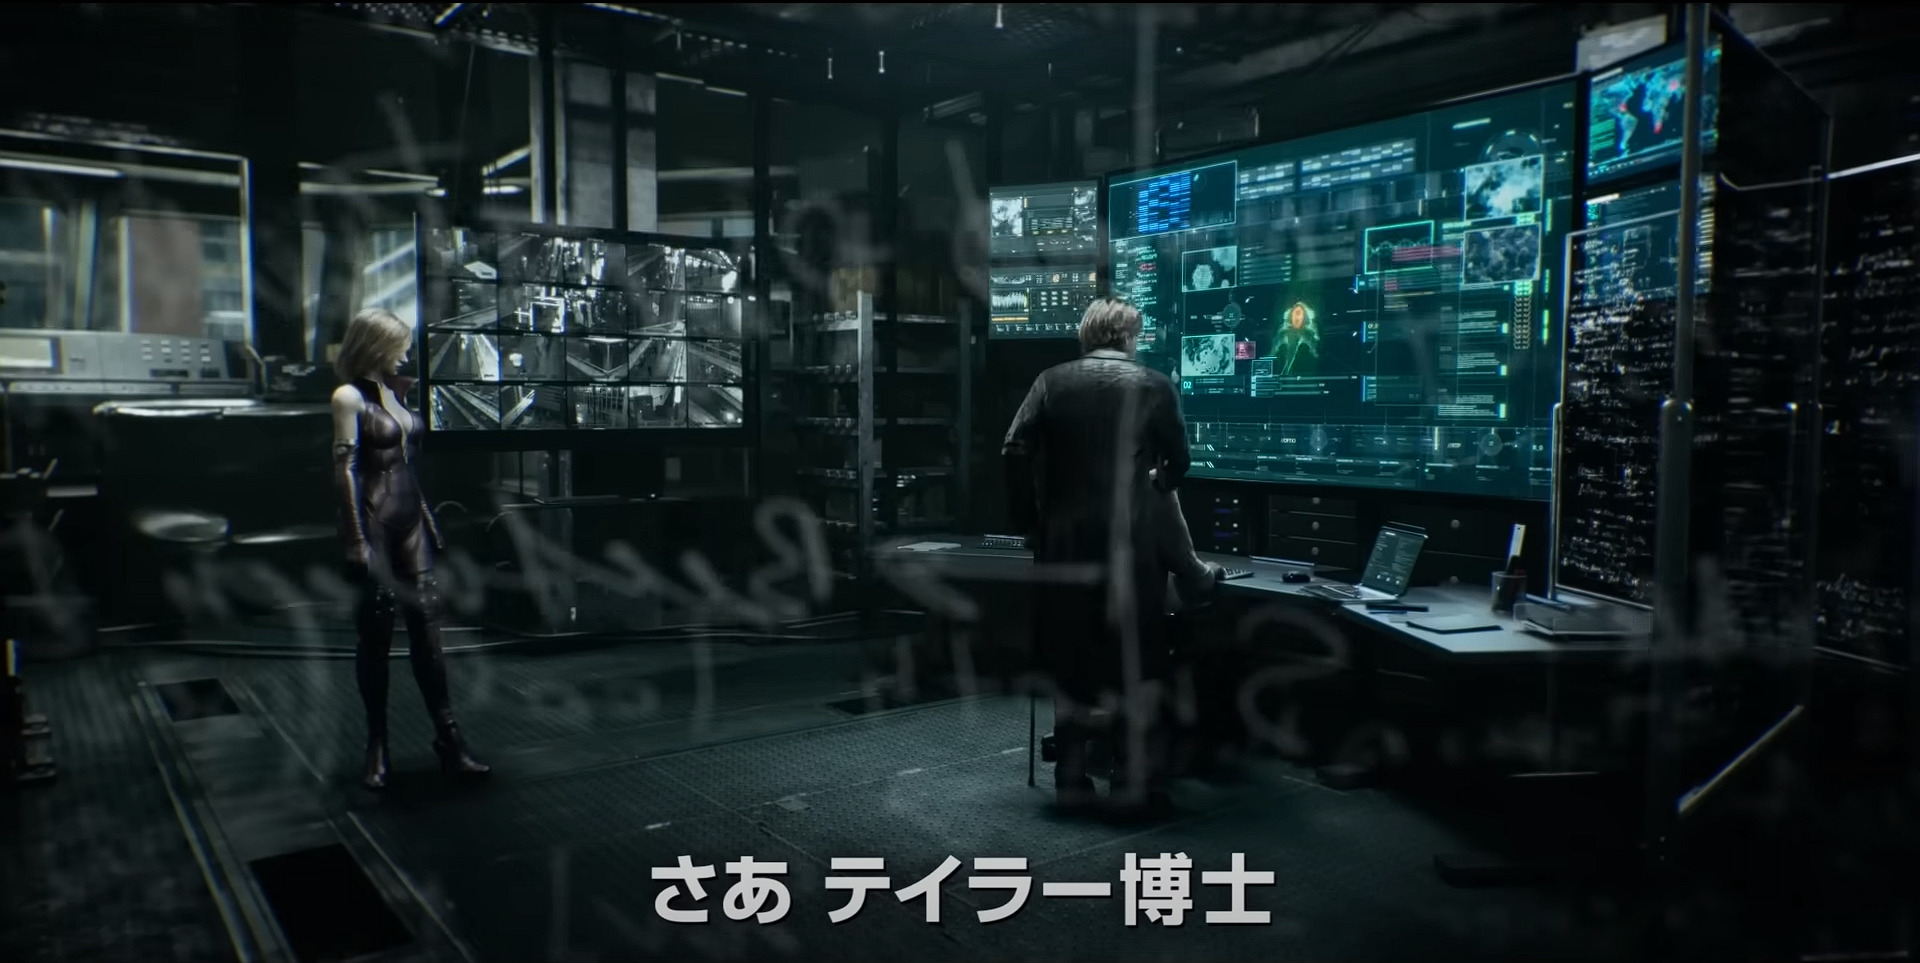 Relógios com tema da animação Resident Evil: Death Island são anunciados e  impressionam - EvilHazard